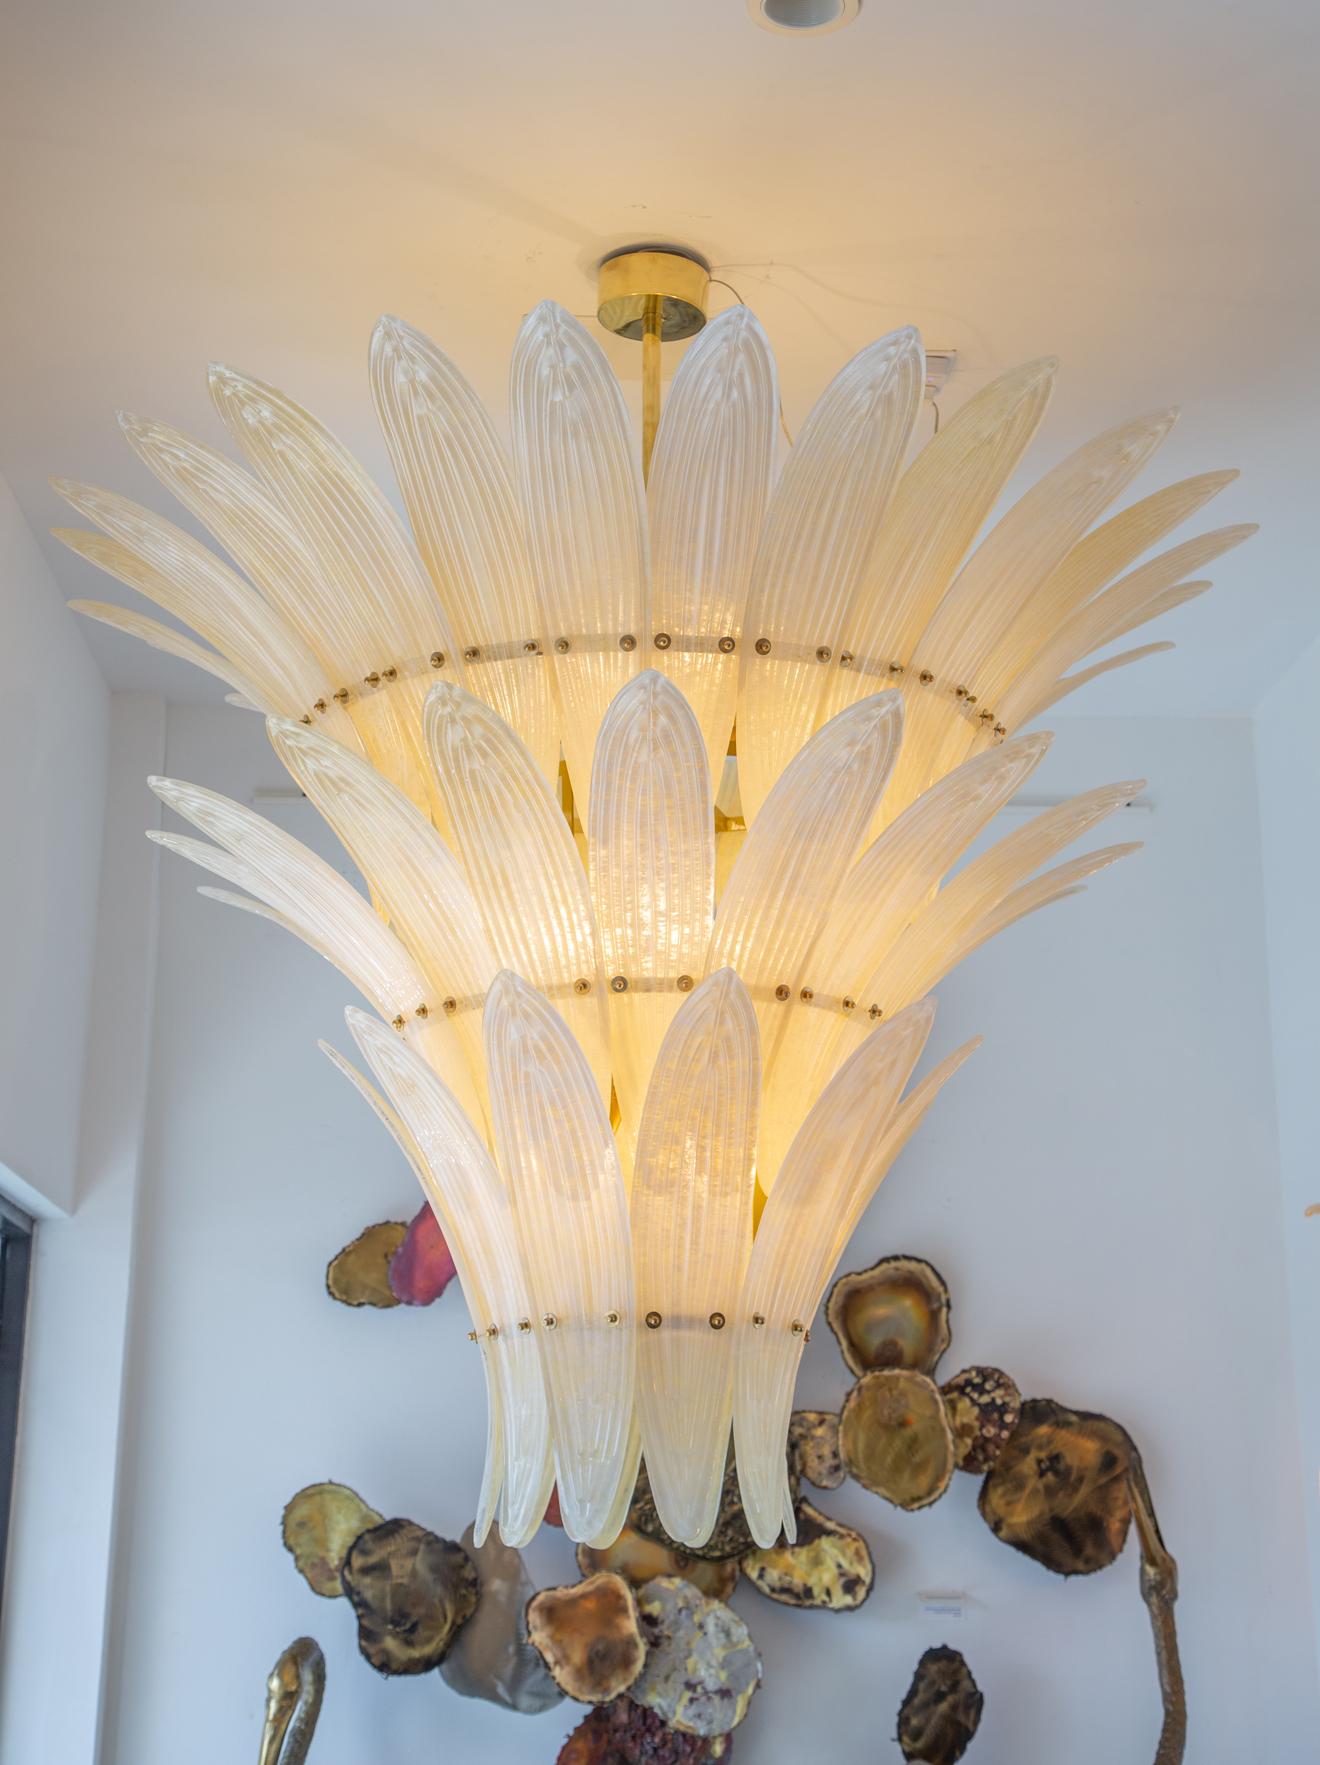 Grandes feuilles de palmier Murano  lustre en verre, Italie en stock
Composé de 50 feuilles de palmier en verre de Murano texturé.
Couleur champagne
Accent en laiton
12 ampoules E26, câblées selon les normes américaines
La chute peut être modifiée